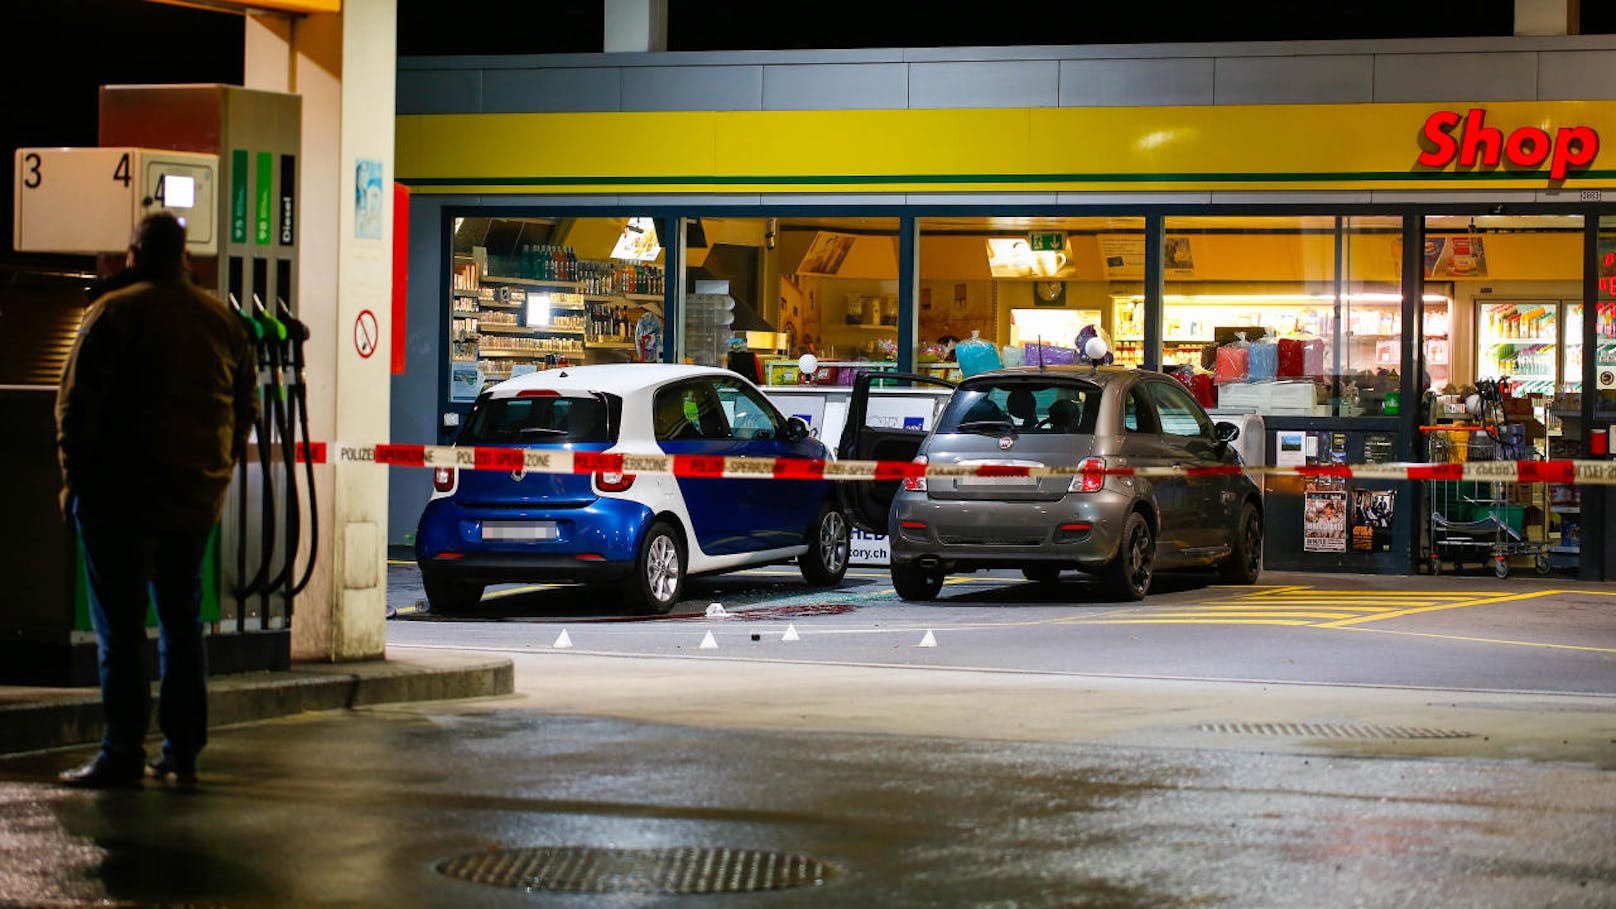 Am späten Sonntagabend attackierte ein 17-jähriger Lette in der Schweizer Ortschaft Flums mehrere Menschen mit einer Axt. Die Polizei stoppte ihn durch Schüsse und nahm ihn fest. Die Behörden gehen derzeit nicht von einem Terror-Hintergrund aus.